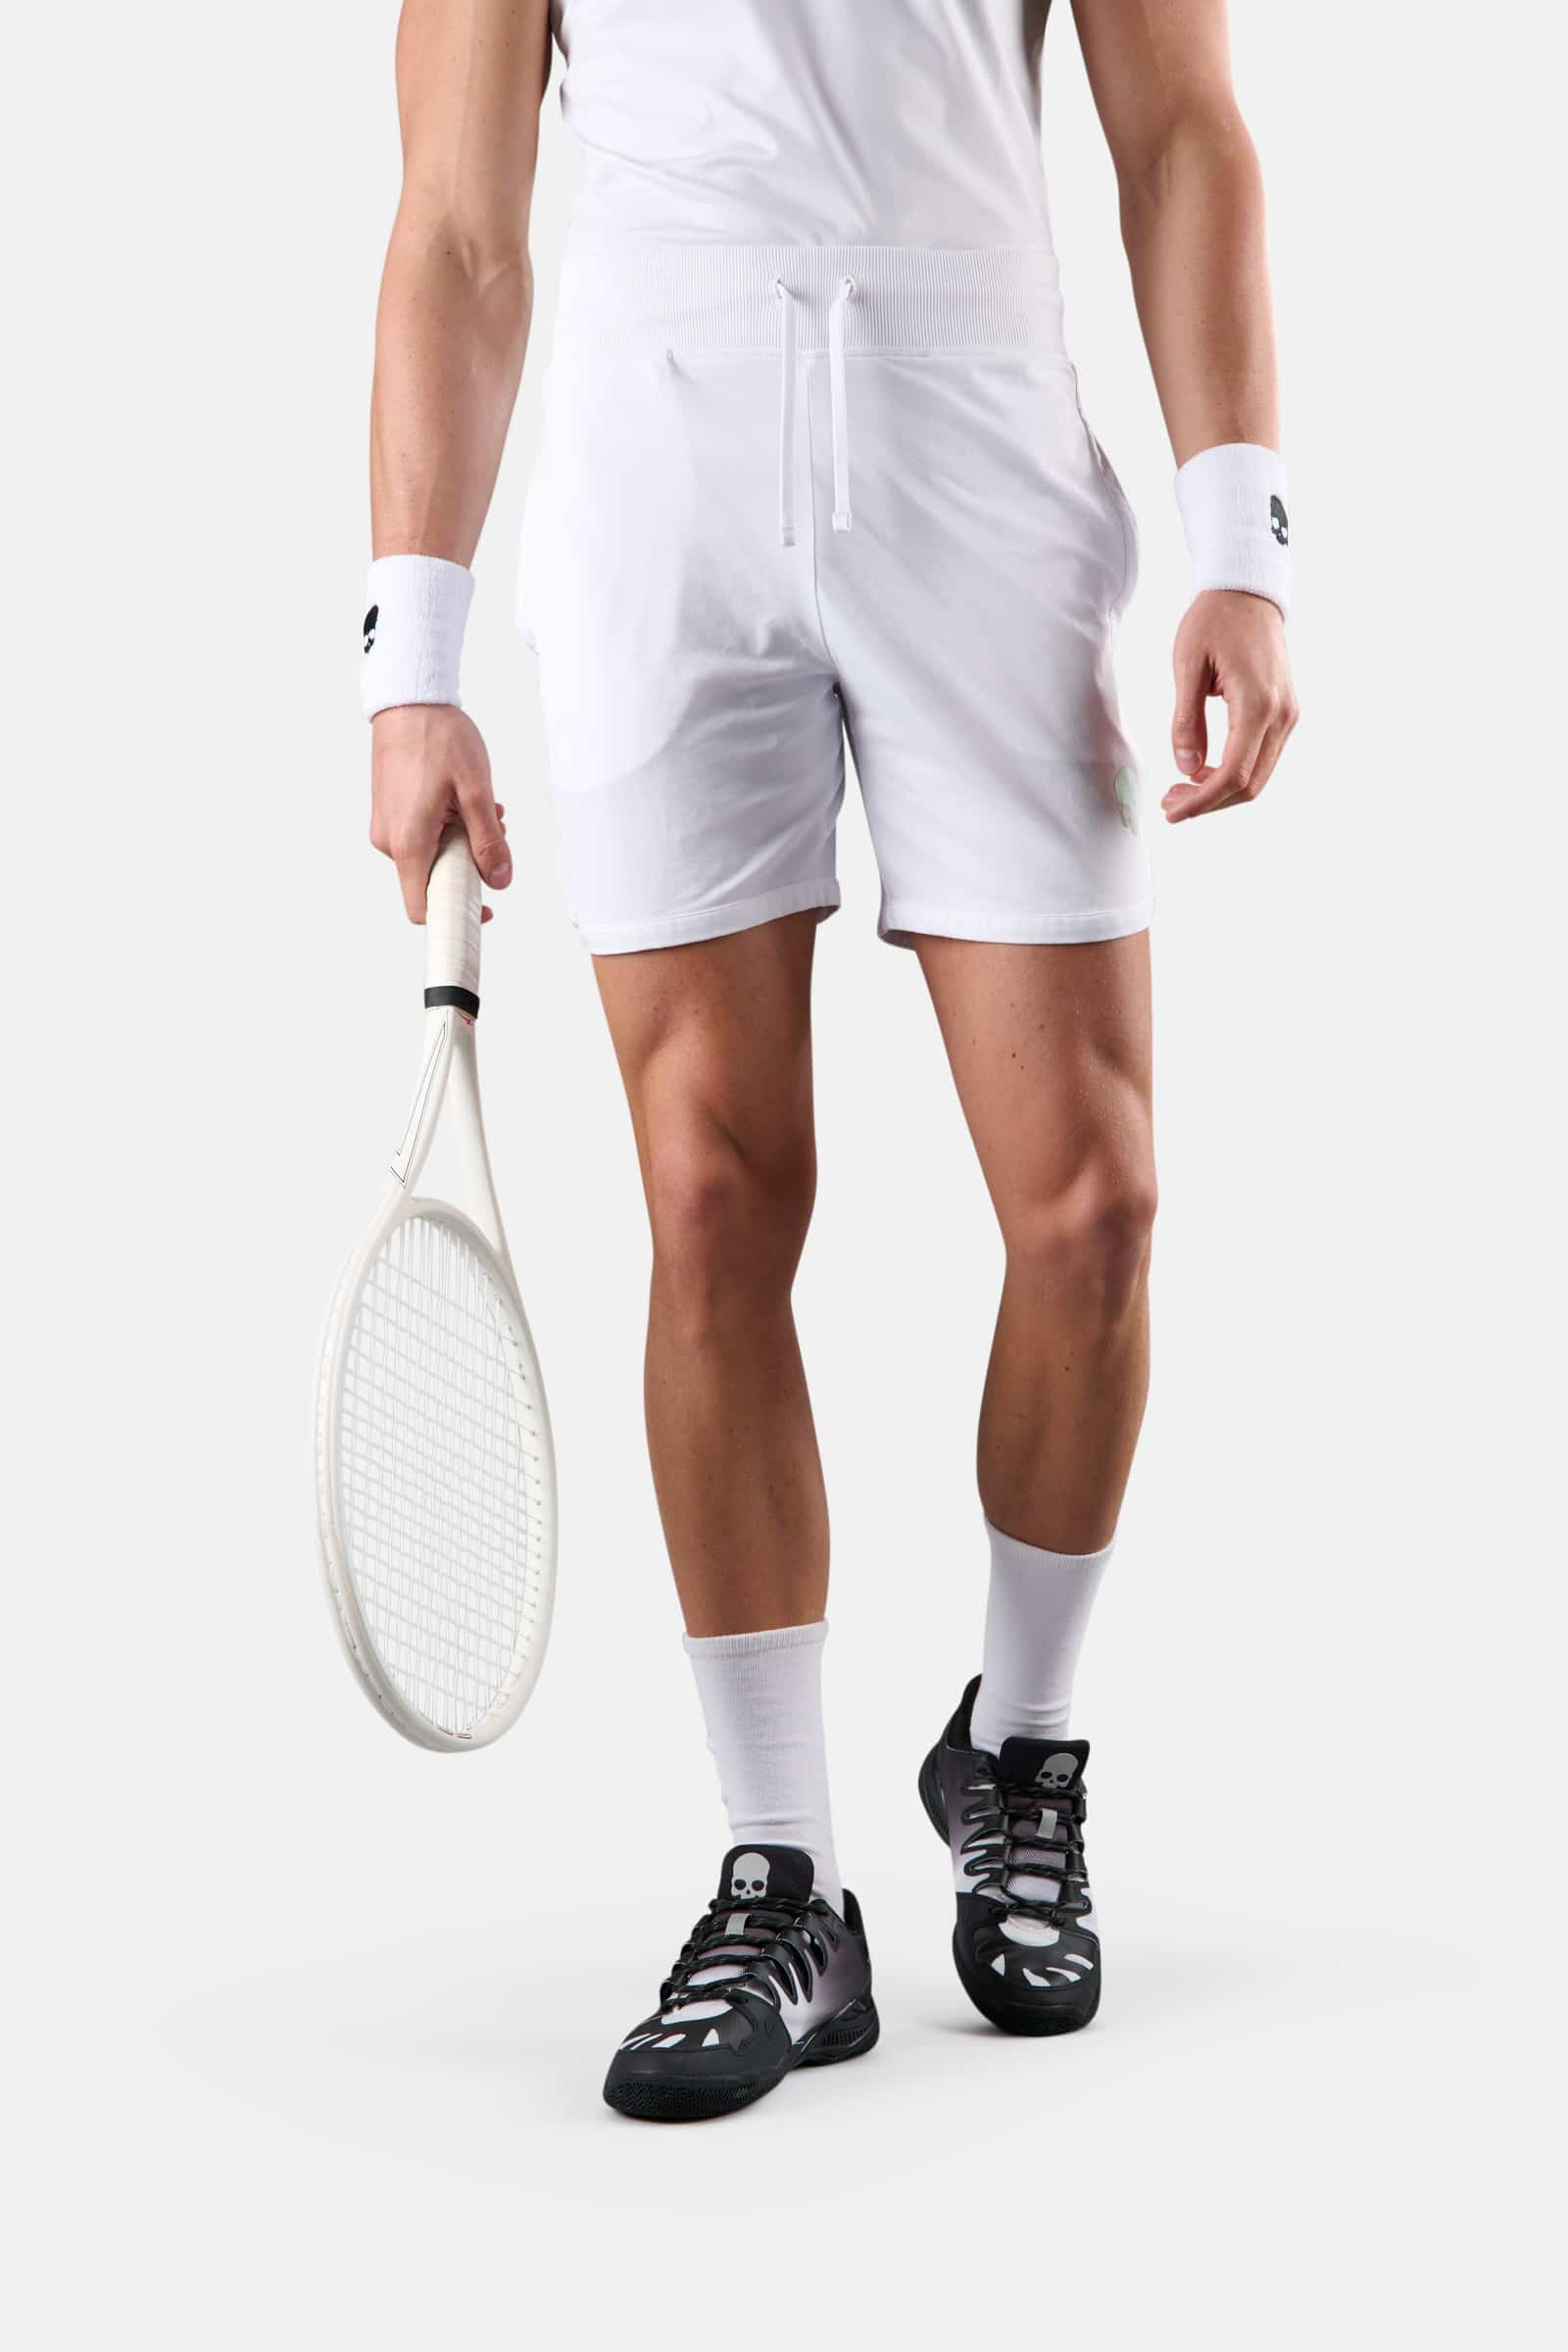 TECH SHORTS - WHITE - Abbigliamento sportivo | Hydrogen